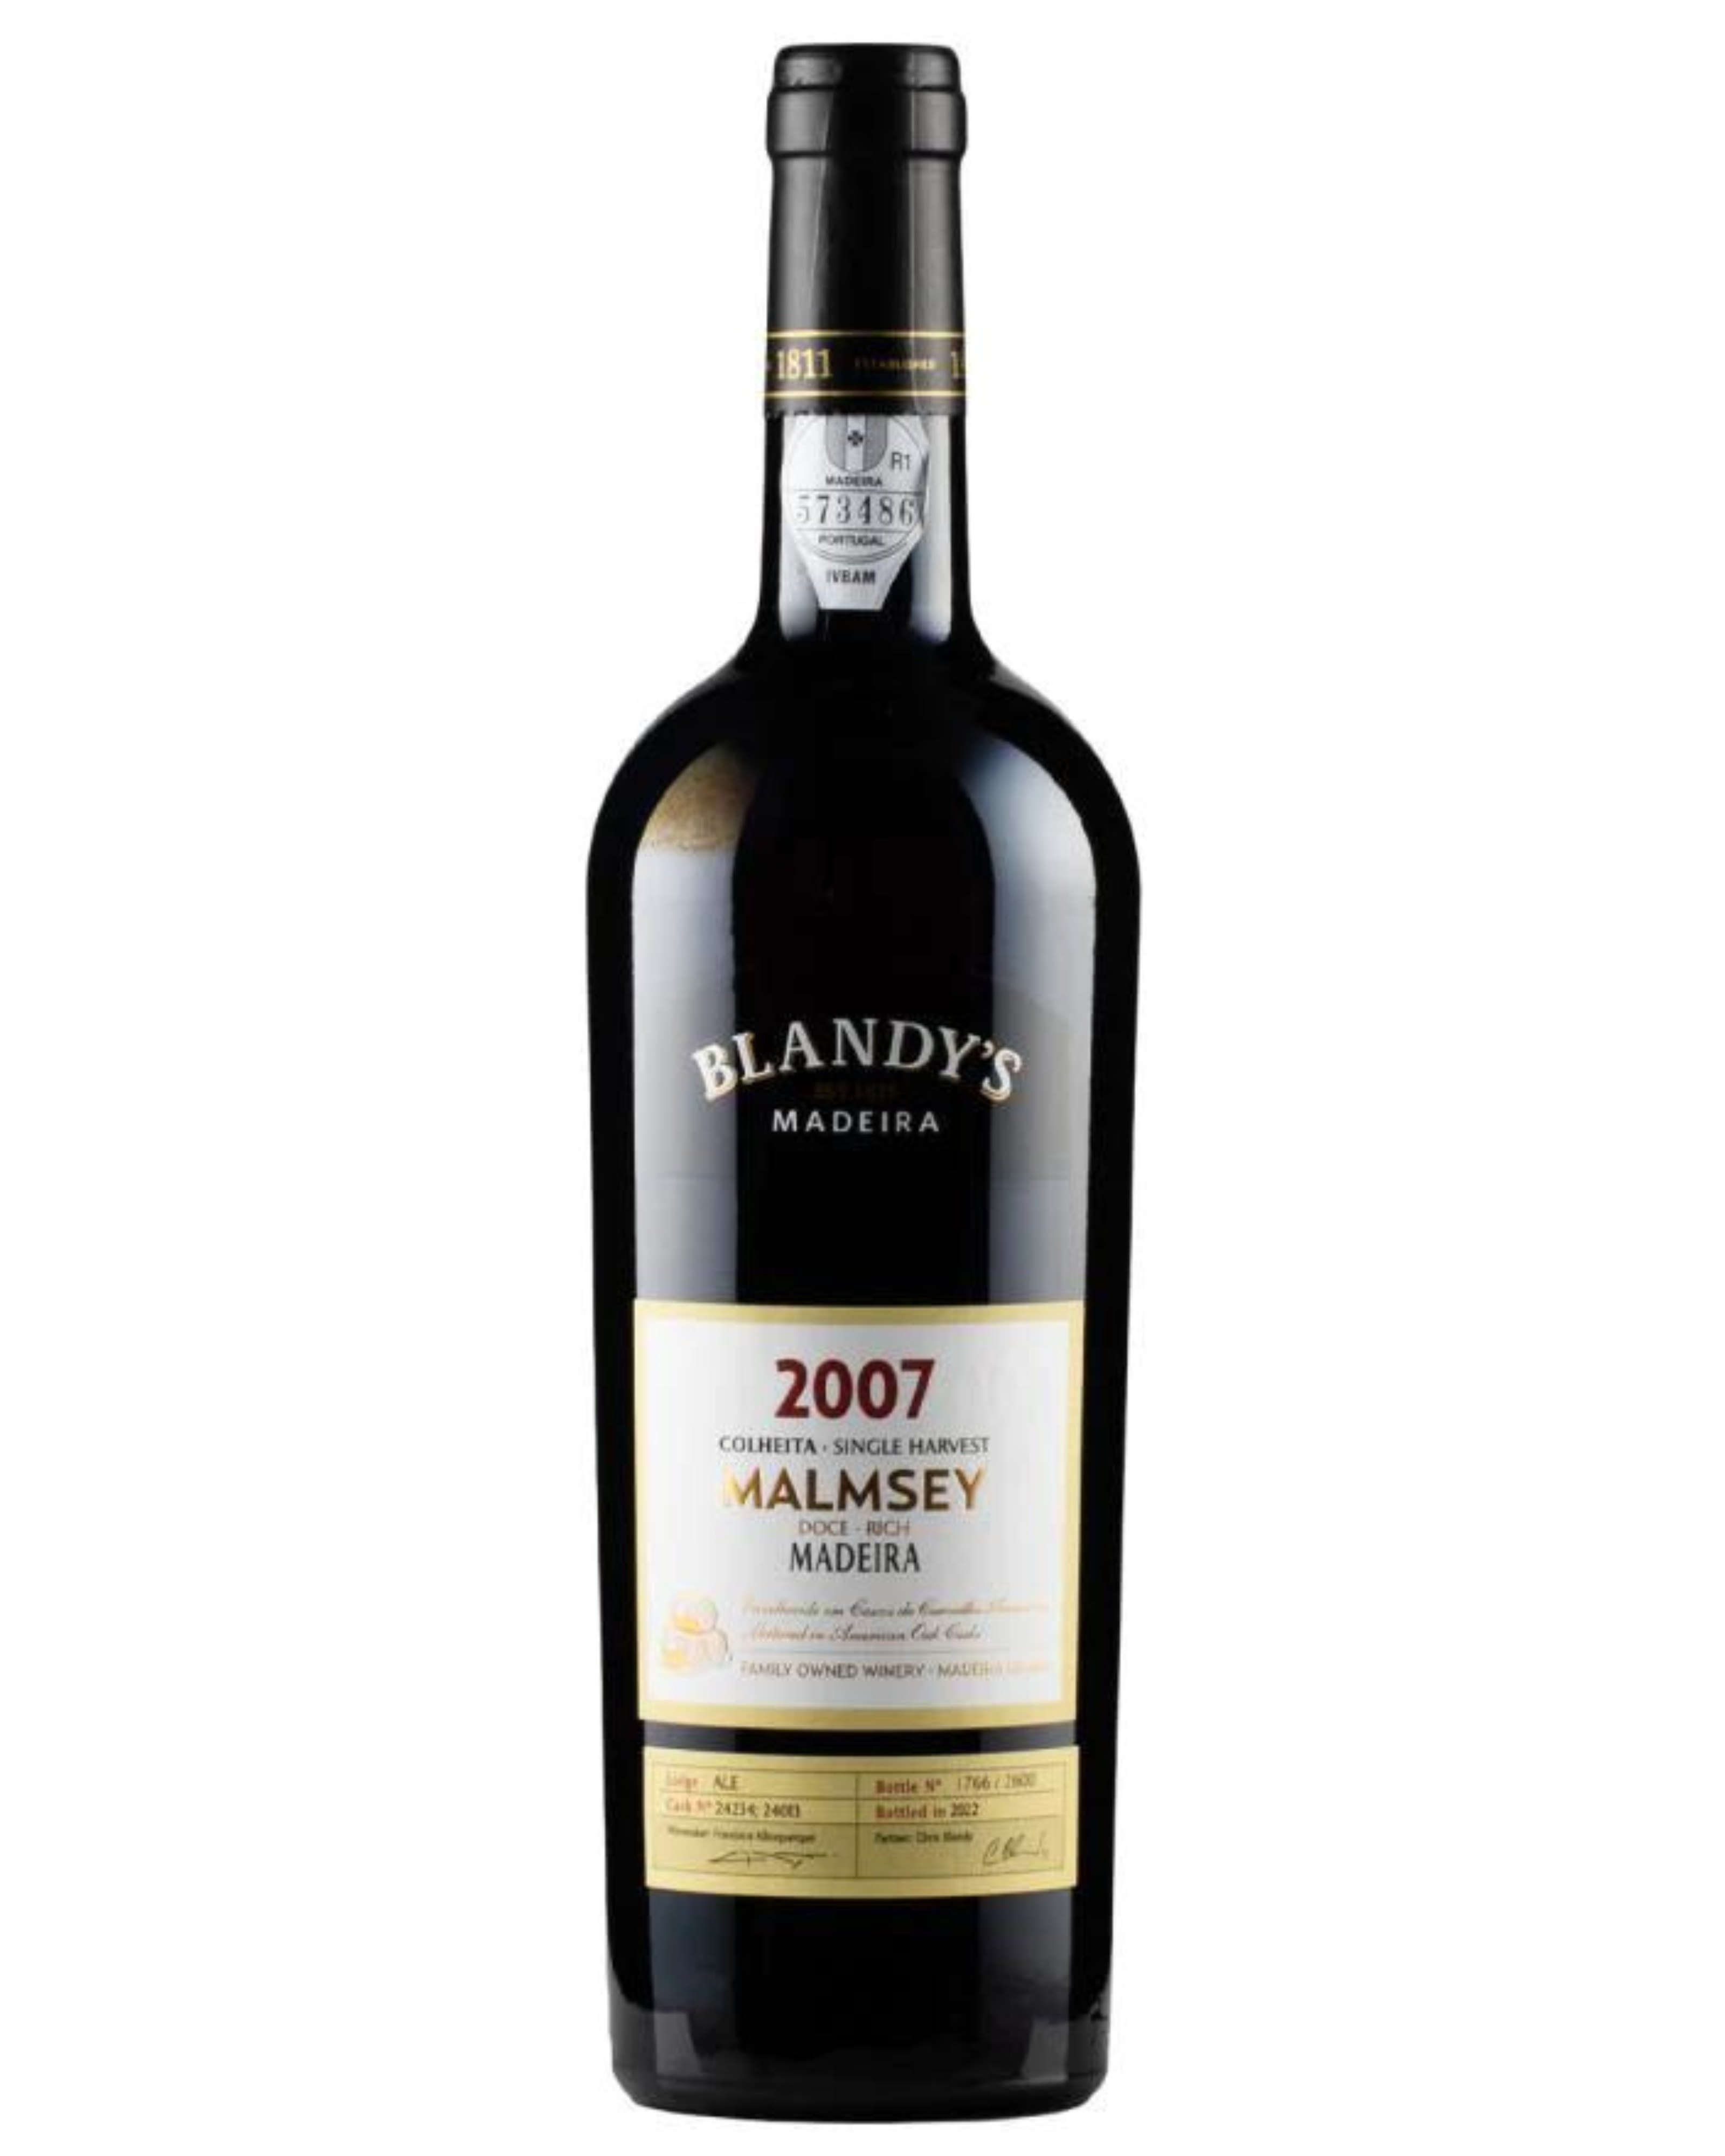 Vinho da Madeira Blandy’s Malmsey 2007 50cl